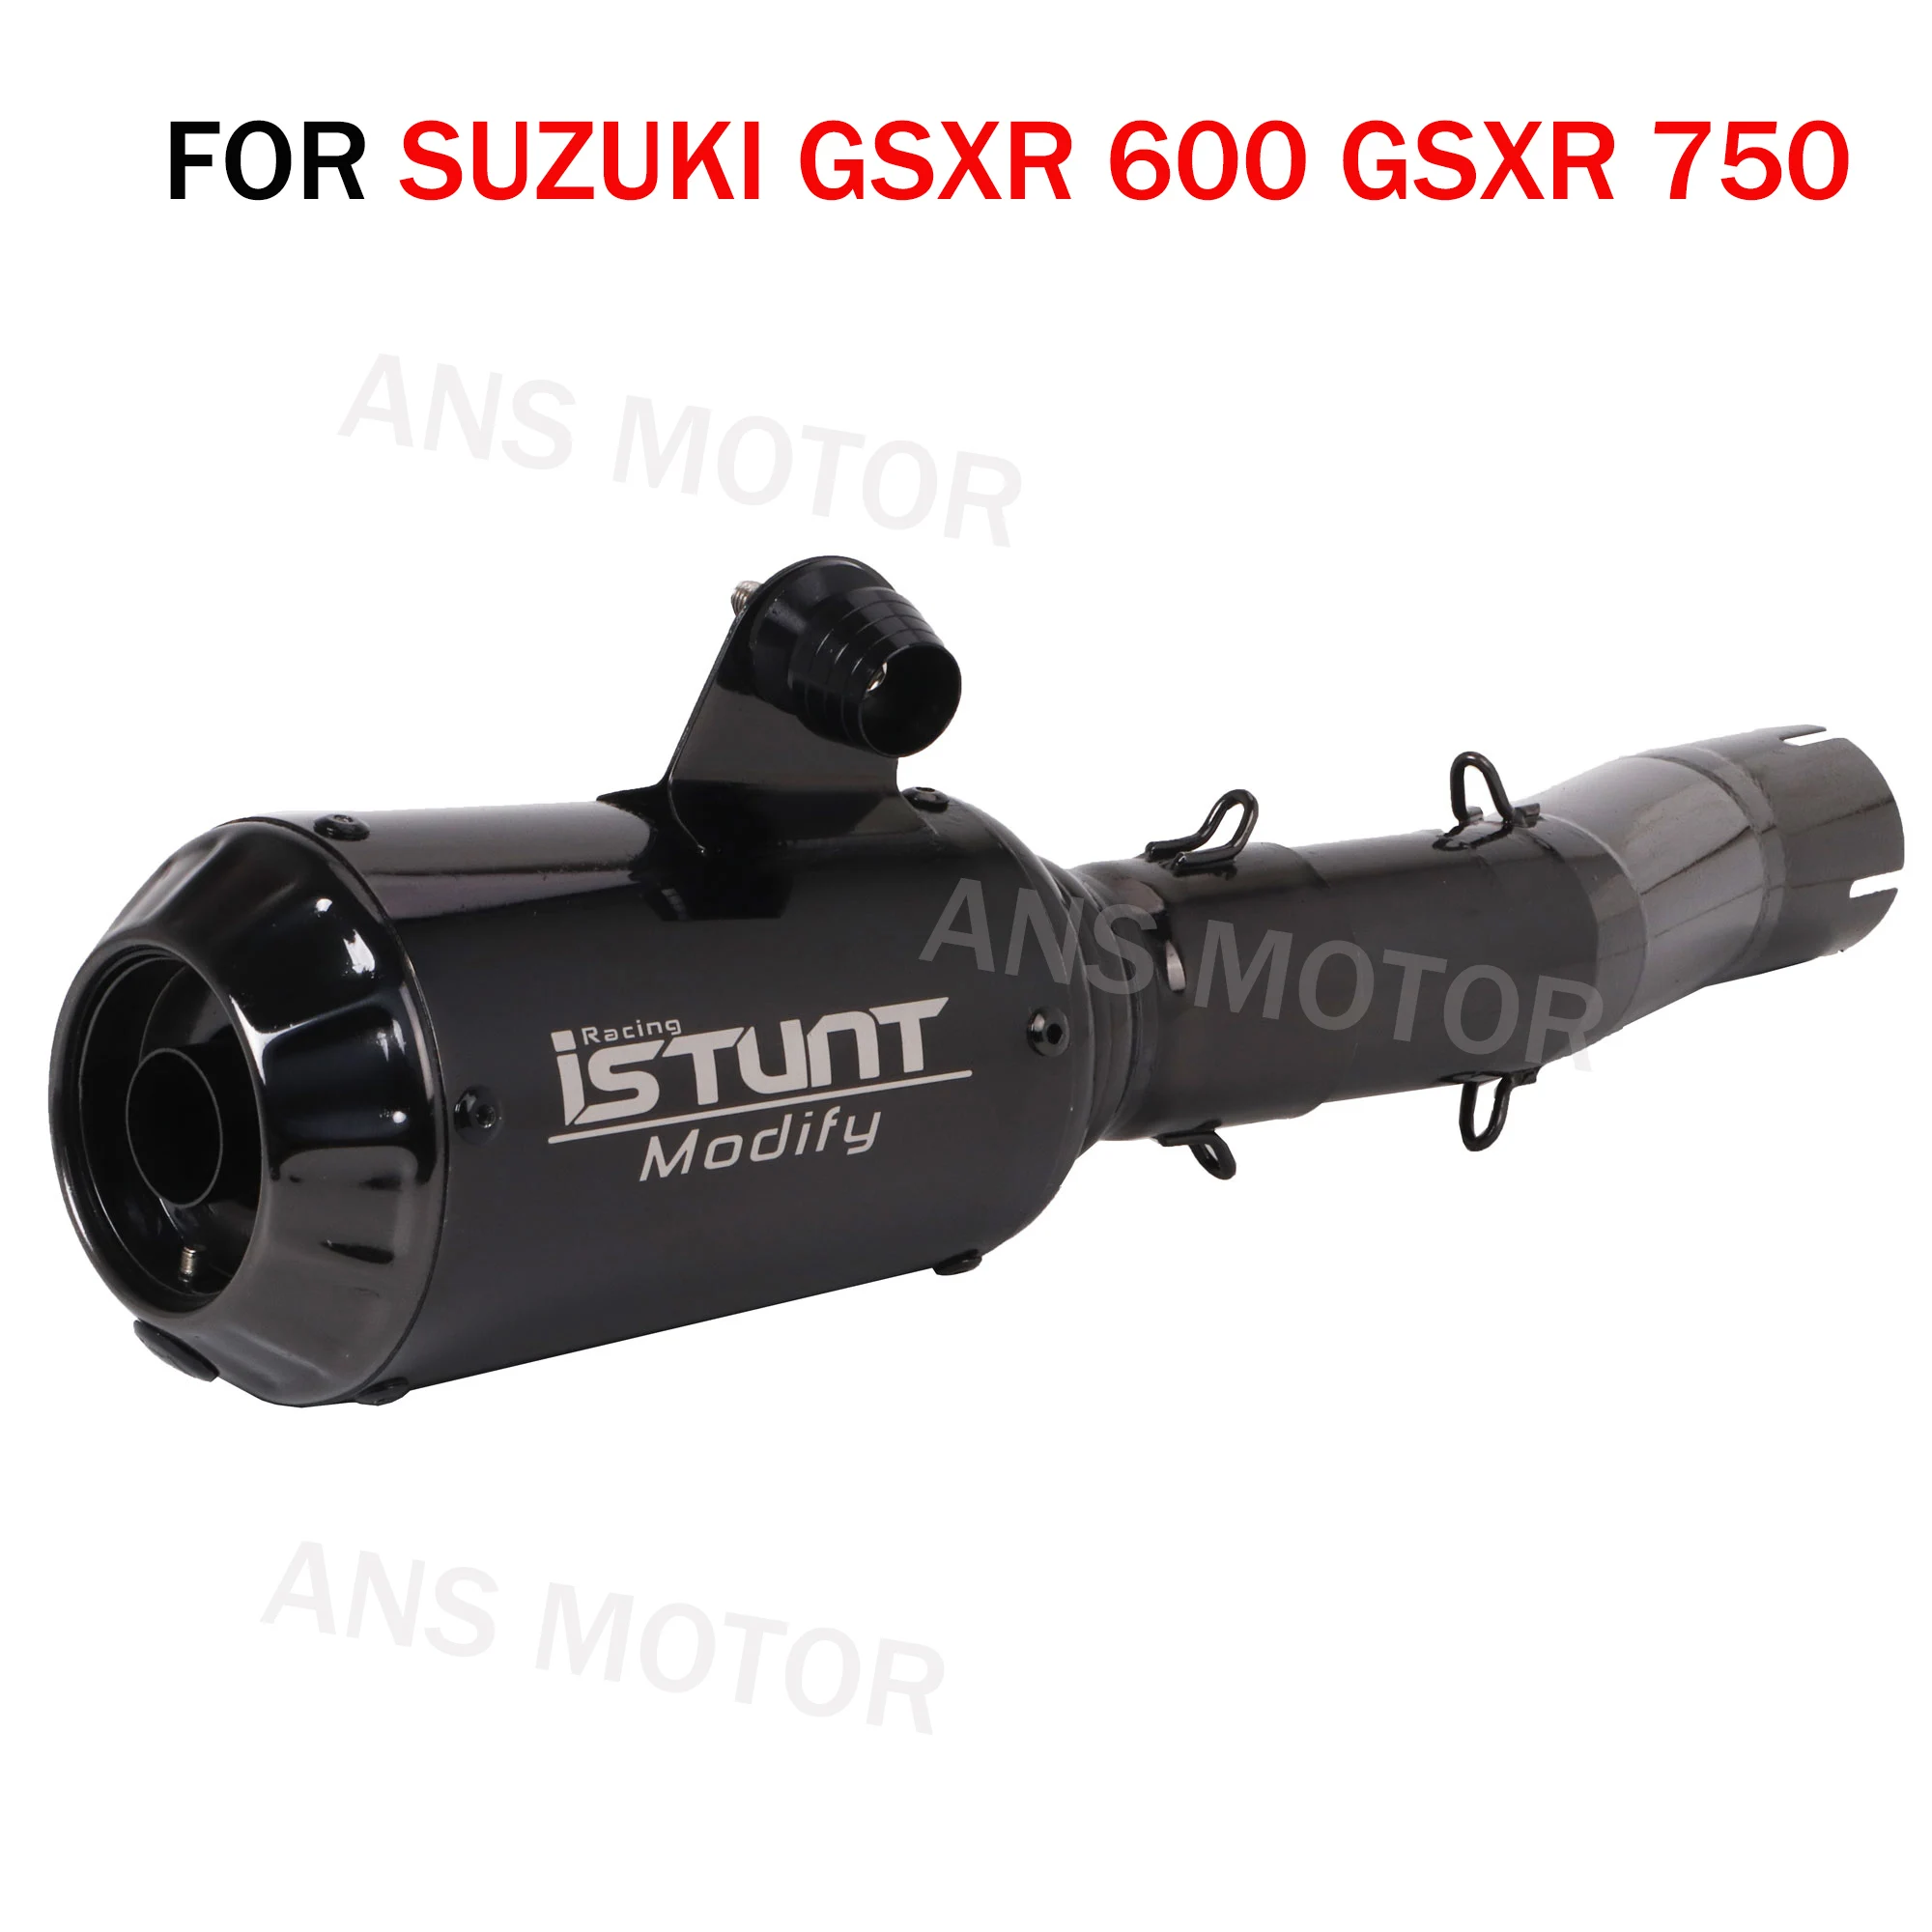 

Motorcycle Exhaust Stainless Steel Slip On Exhaust System For SUZUKI GSXR 600 GSXR 750